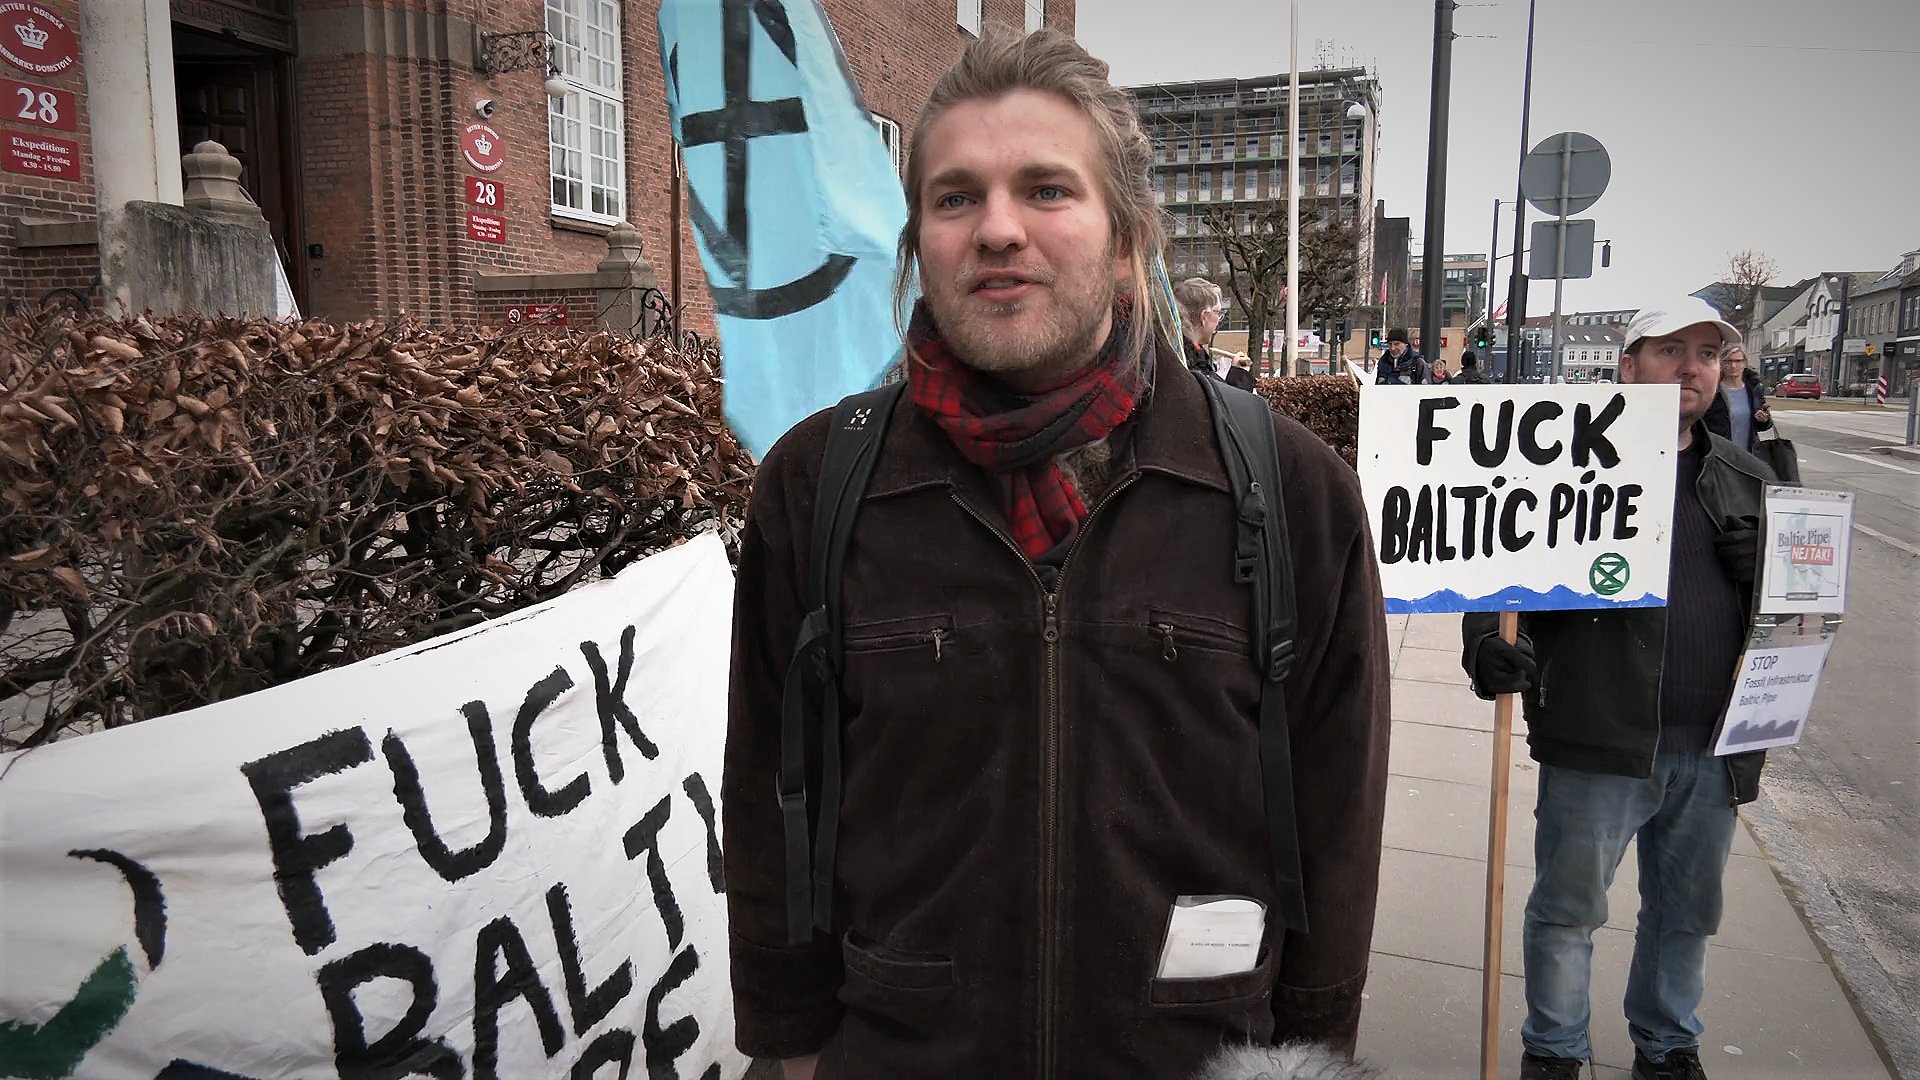 Demonstranter ved Baltic Pibe-sag: - Fossilt gas hører simpelthen til TV2 Fyn